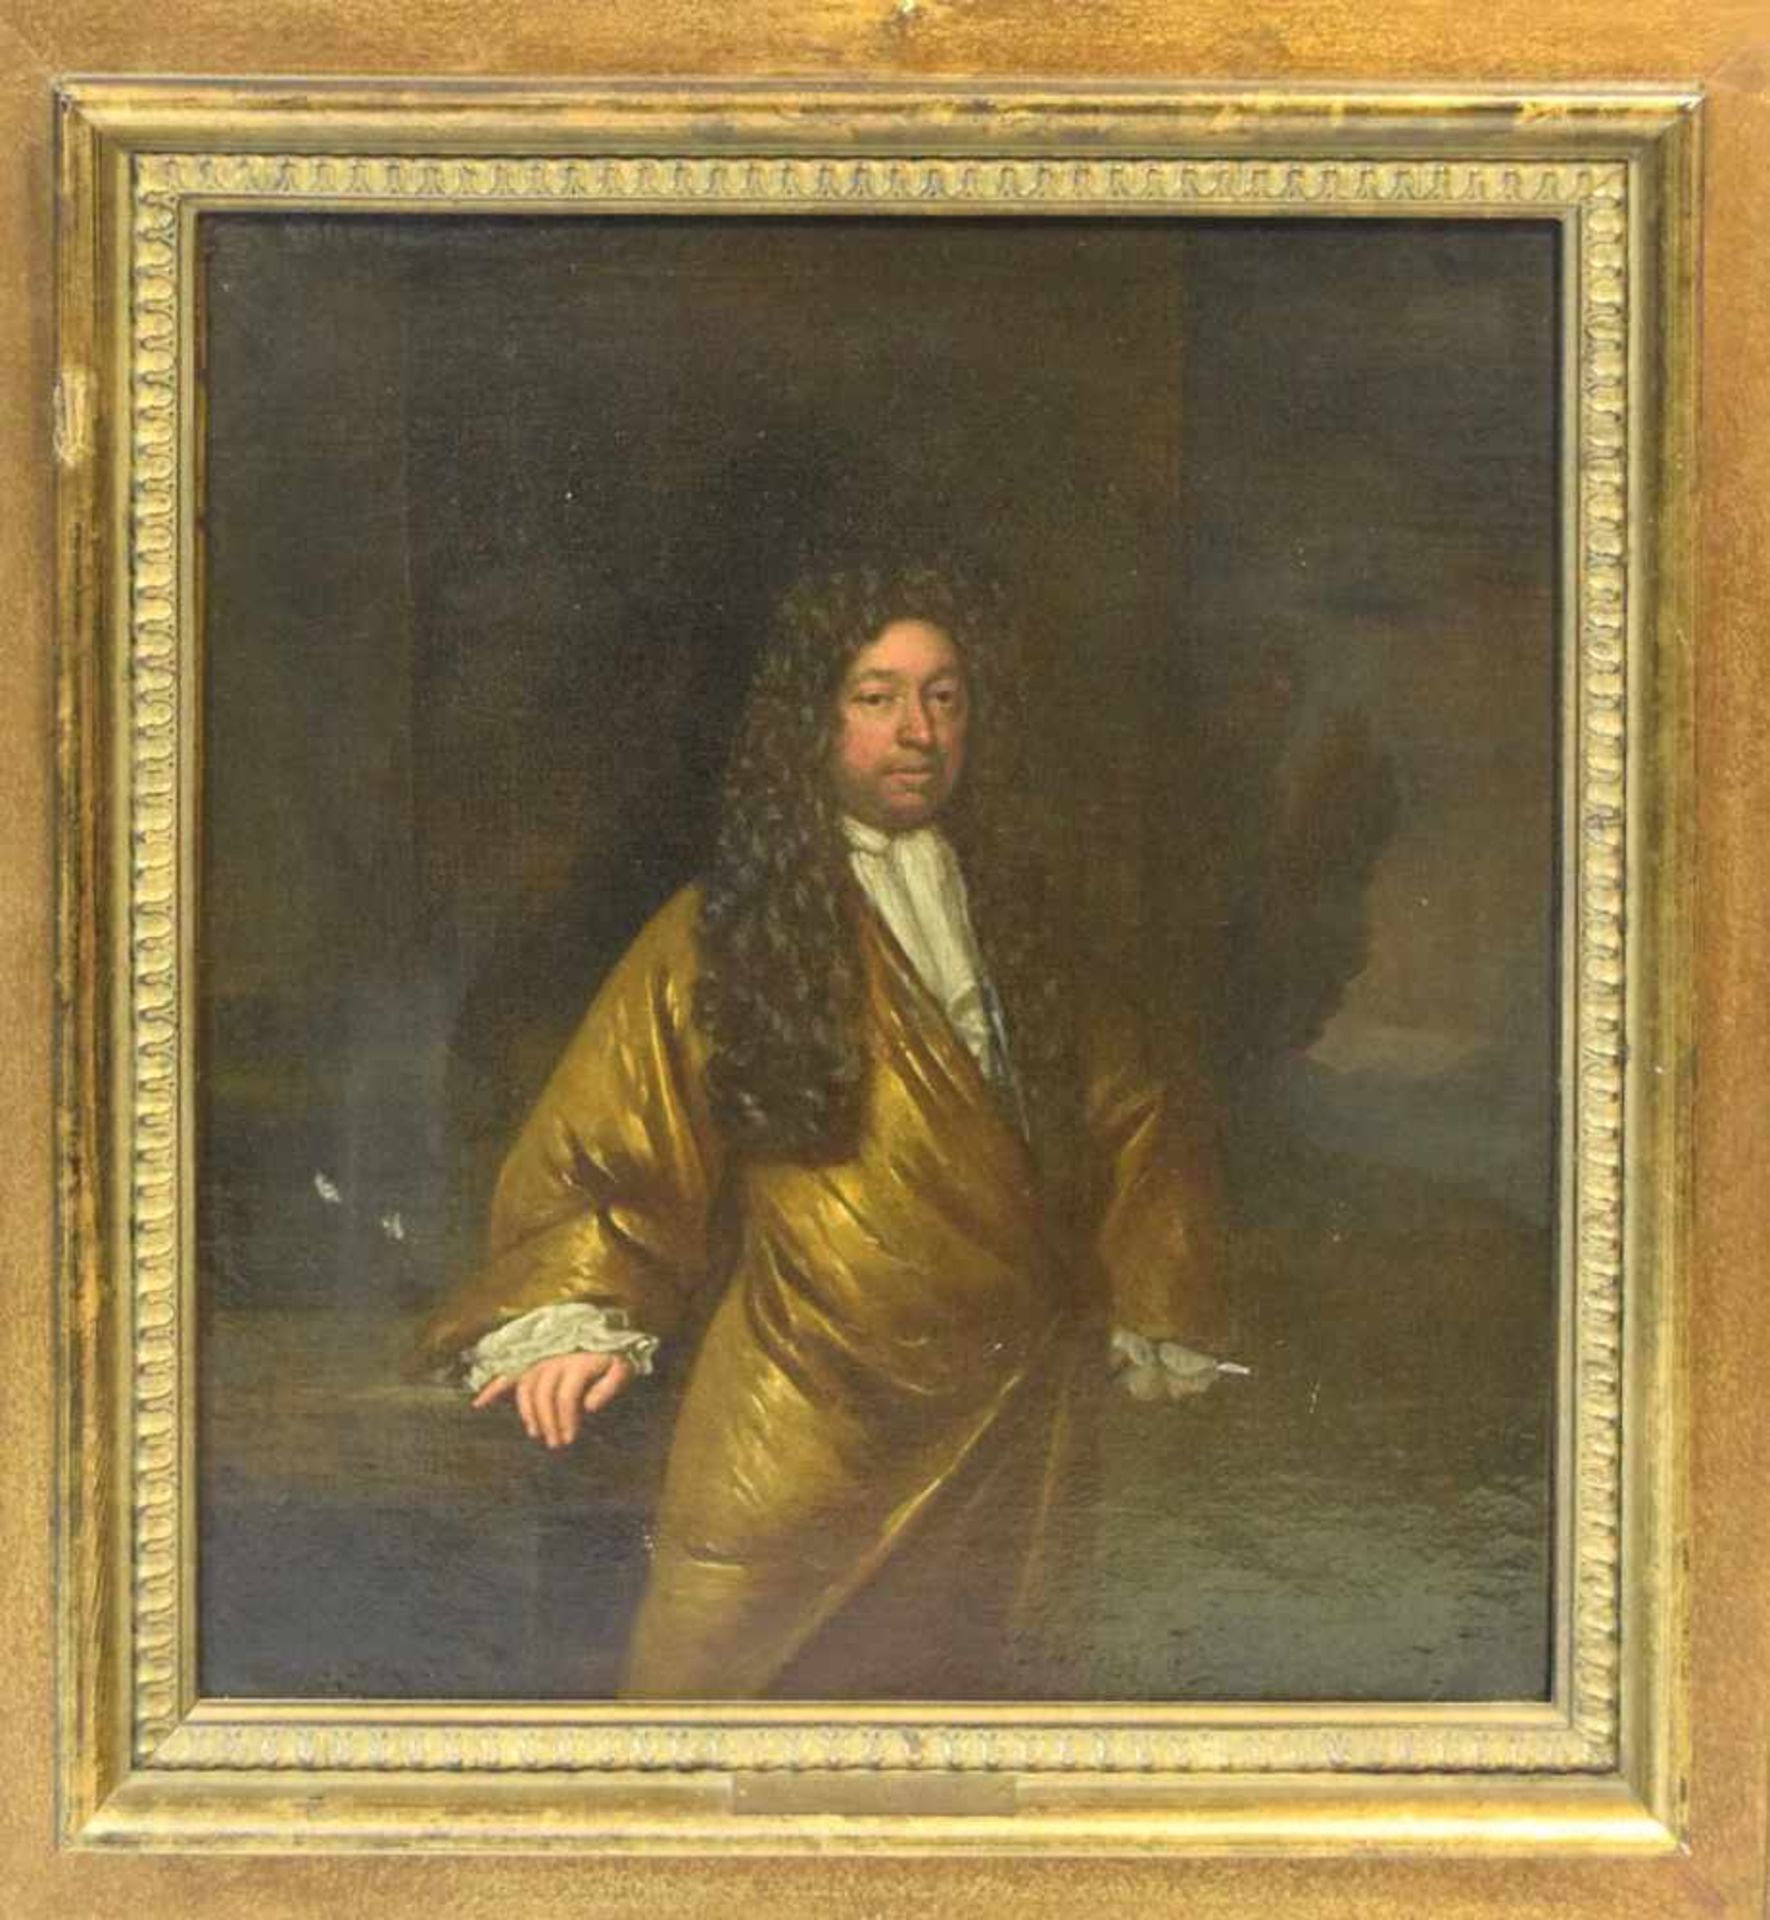 Konstantin Netscher bez.1668-1723 Den Haag, Portrait eines Adligen im goldenen Gewand mit